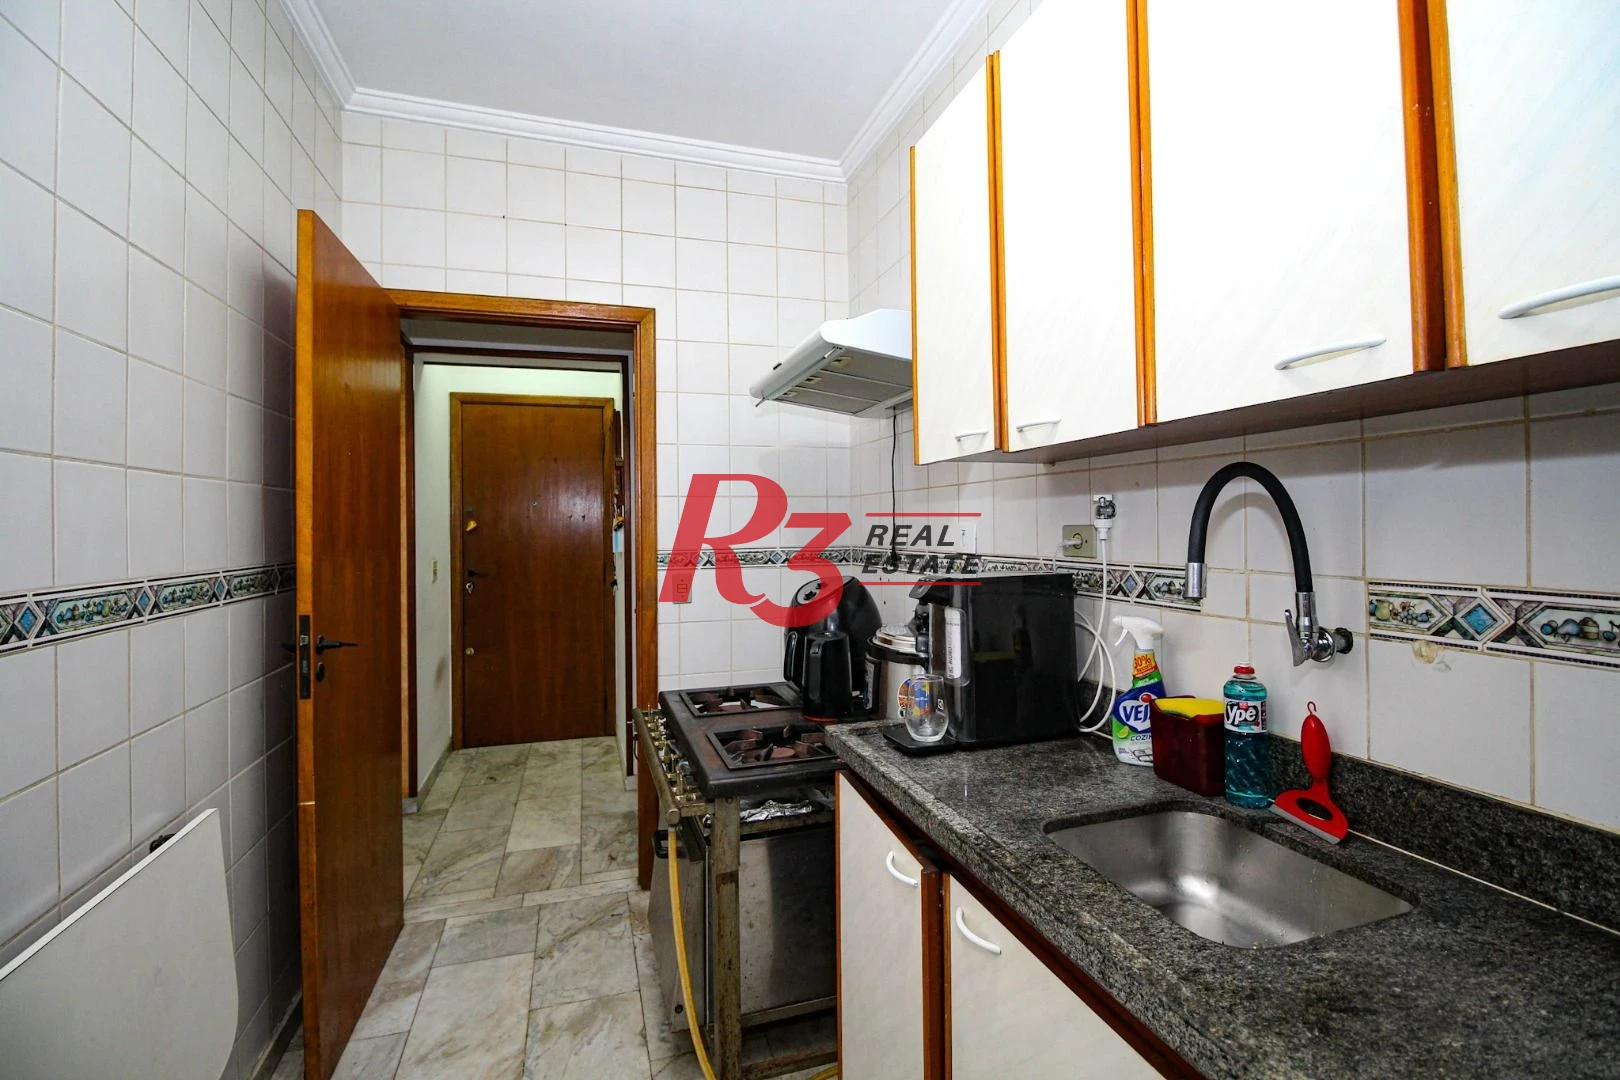 Apartamento 2 dormitórios na Vila Mathias em Santos, SP.